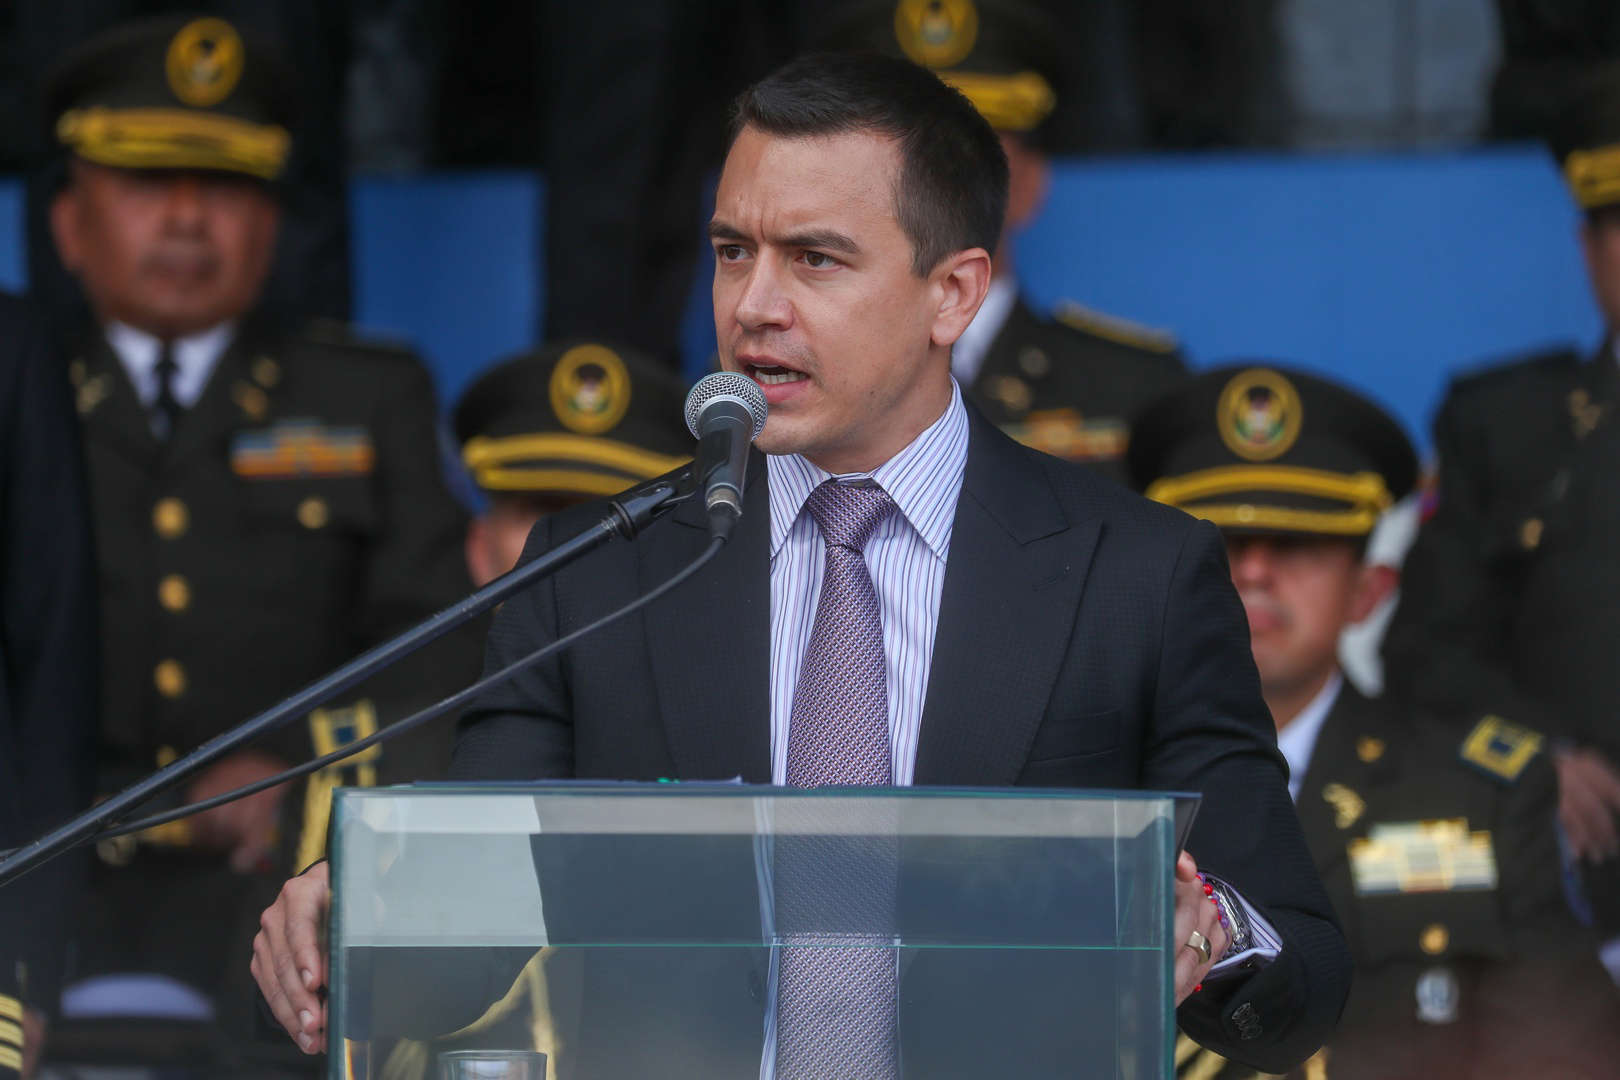 El presidente Noboa advierte que presos repatriados a Colombia no podrán volver a Ecuador